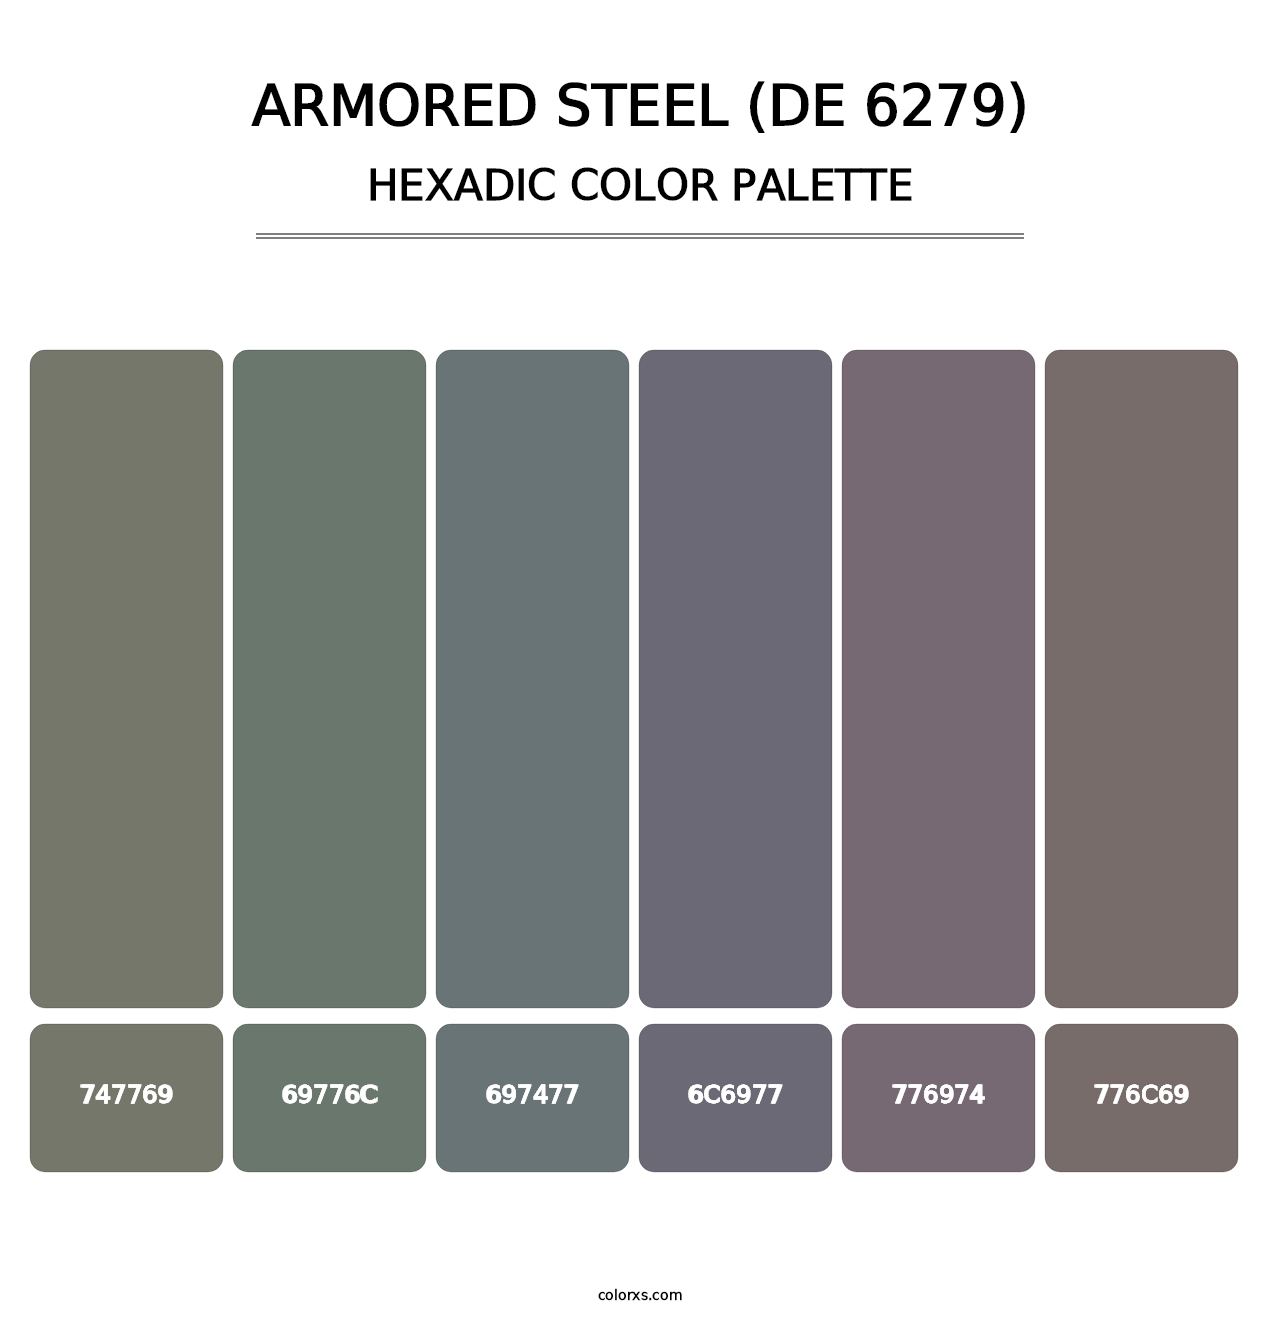 Armored Steel (DE 6279) - Hexadic Color Palette